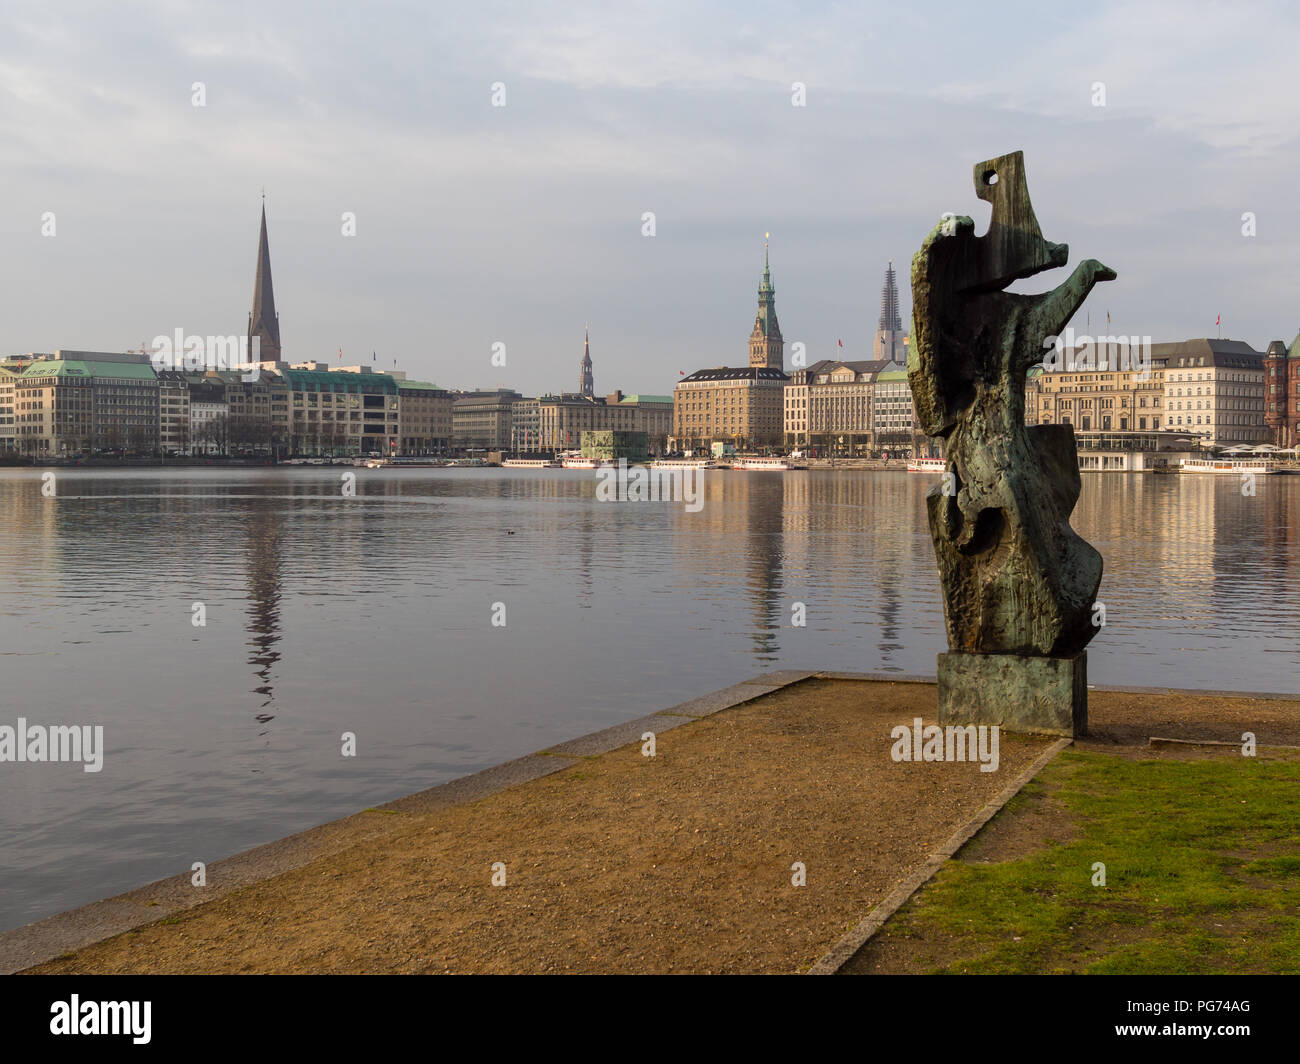 Hamburgo, Alemania - 14 de abril de 2016: Ver en escultura denominada 'Windsbraut', torbellino, lago Alster y Ballindamm, Jungfernstieg y torre de la ciudad. Foto de stock